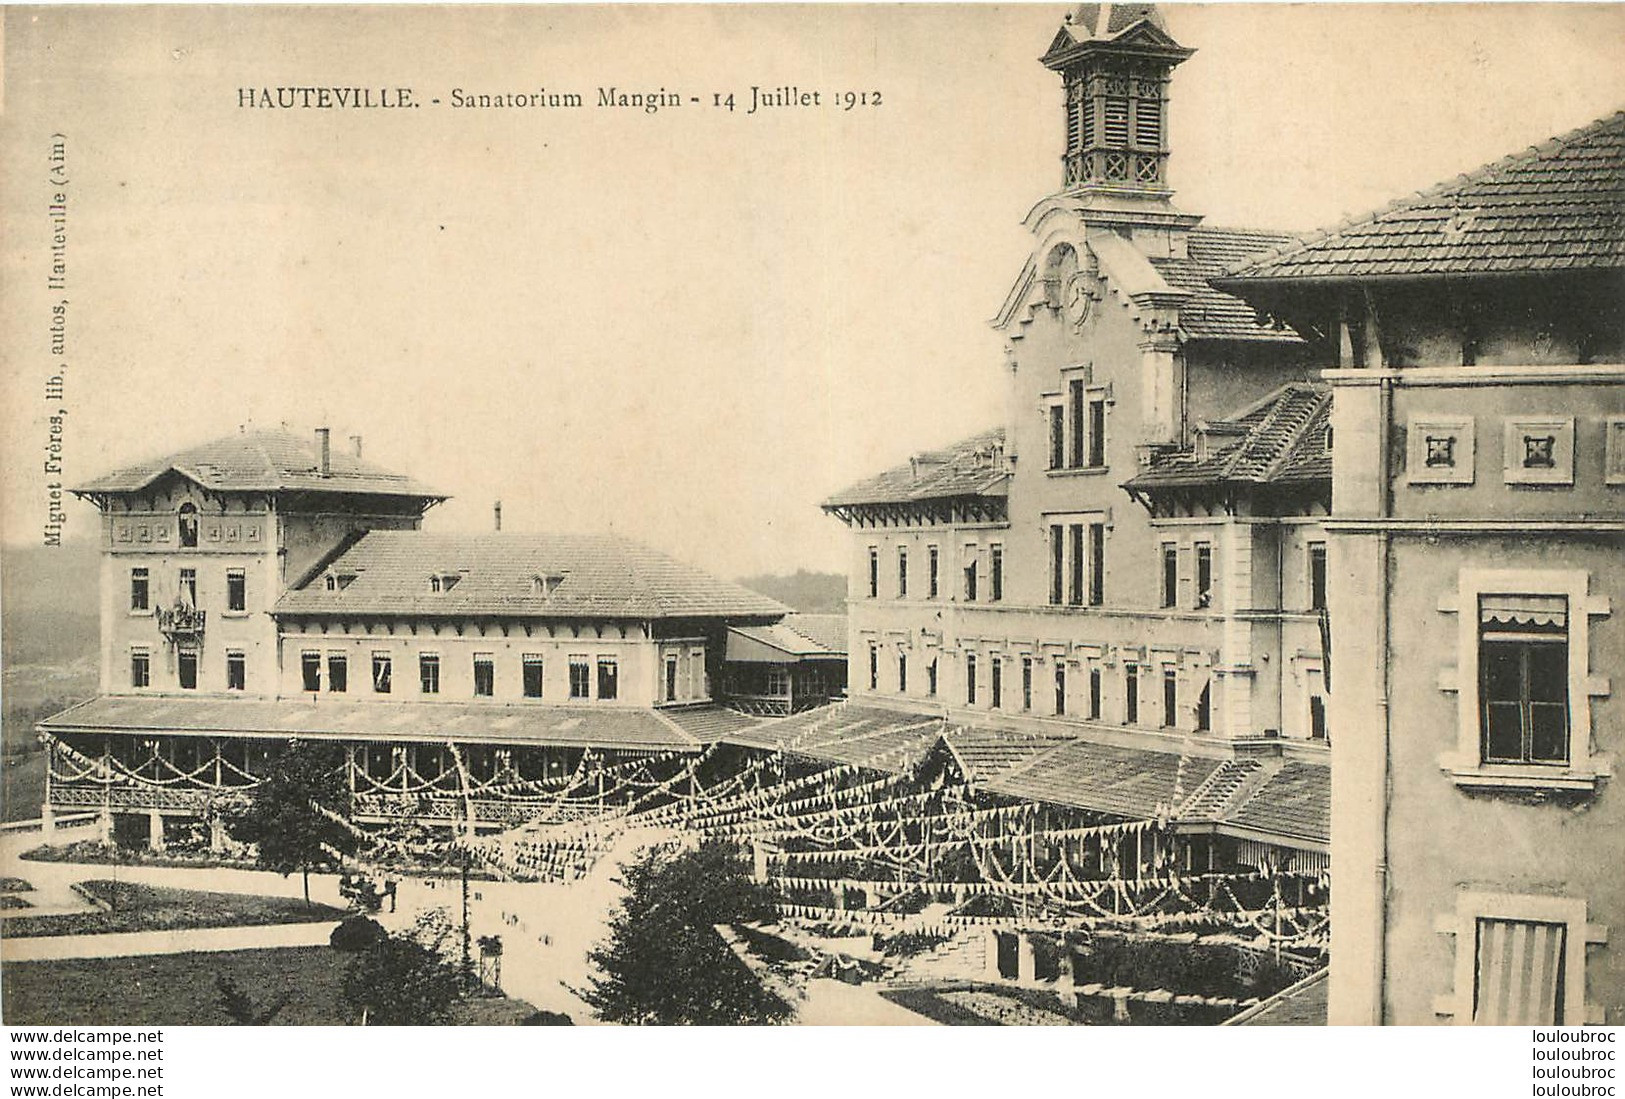 HAUTEVILLE SANATORIUM MANGINI - Hauteville-Lompnes